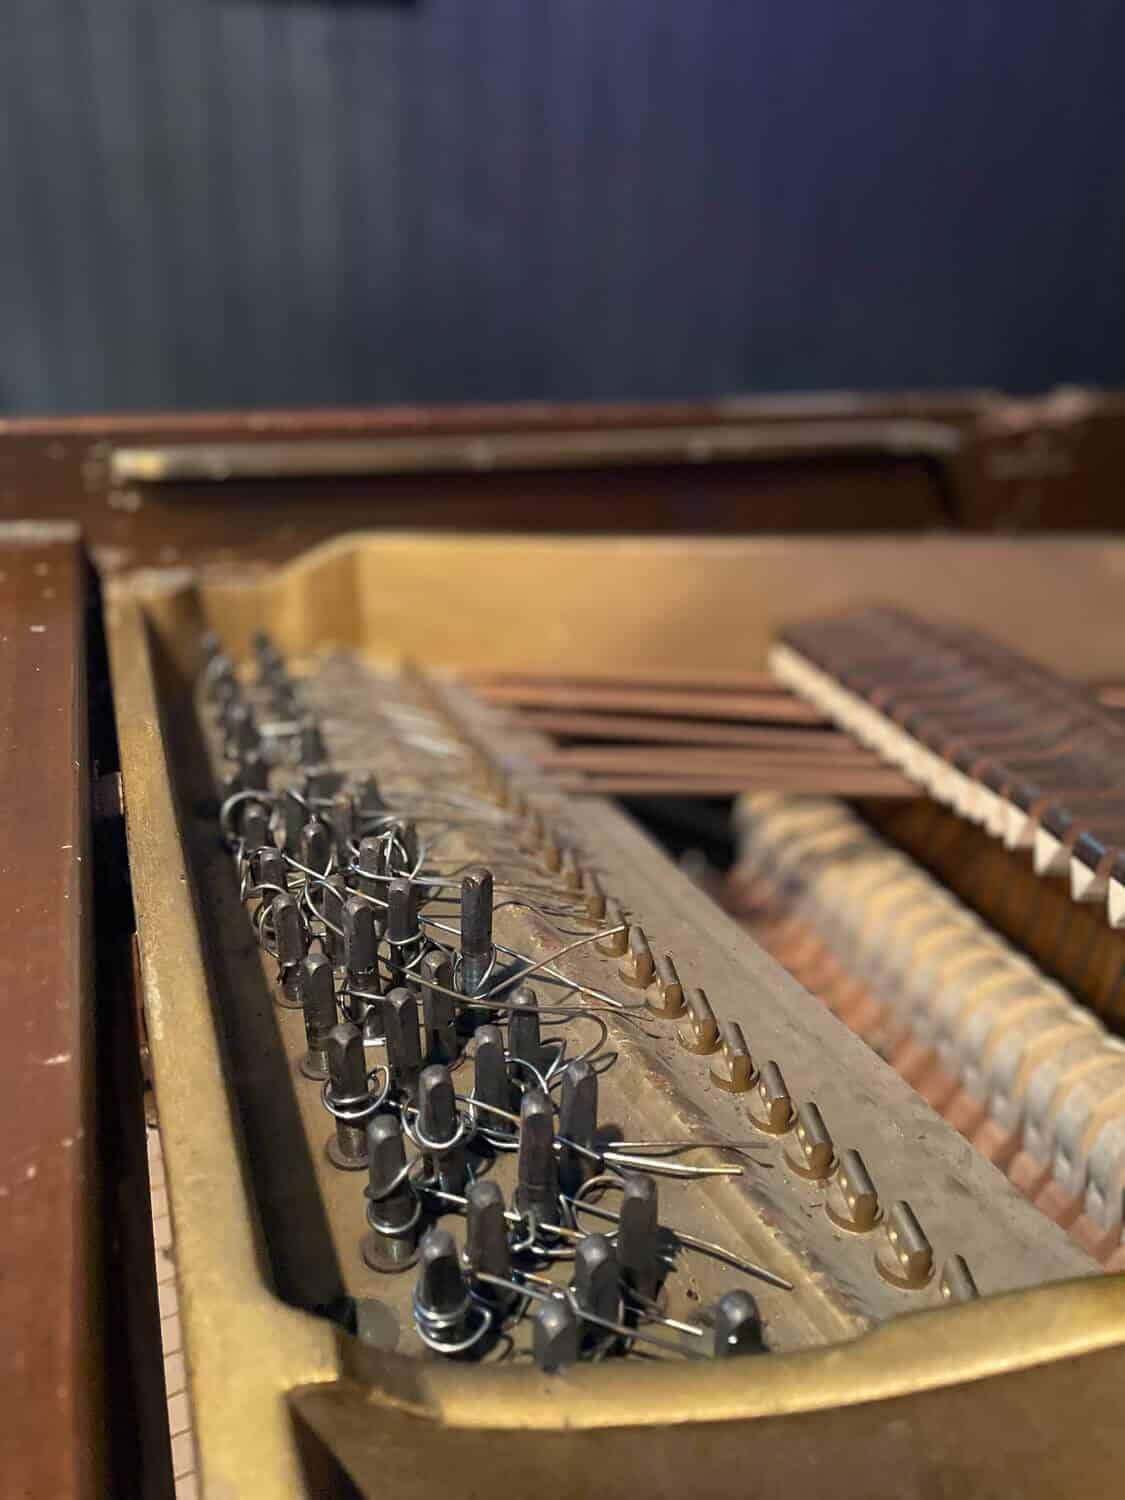 An old piano beyond repair being taken apart